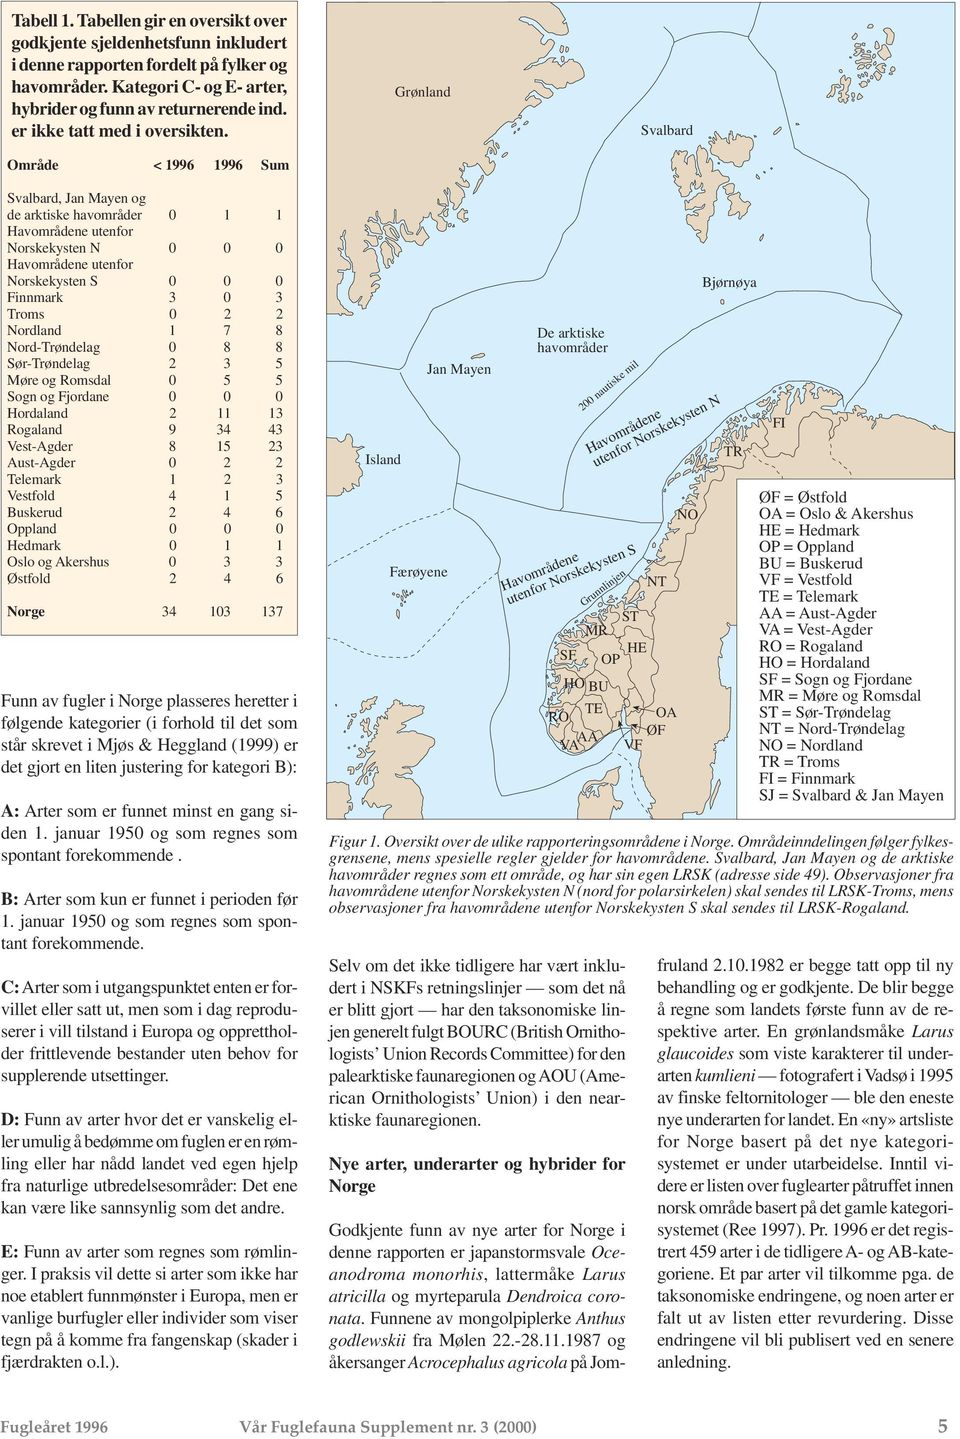 Område < 1996 1996 Sum Grønland Svalbard Svalbard, Jan Mayen og de arktiske havområder 0 1 1 Havområdene utenfor Norskekysten N 0 0 0 Havområdene utenfor Norskekysten S 0 0 0 Finnmark 3 0 3 Troms 0 2